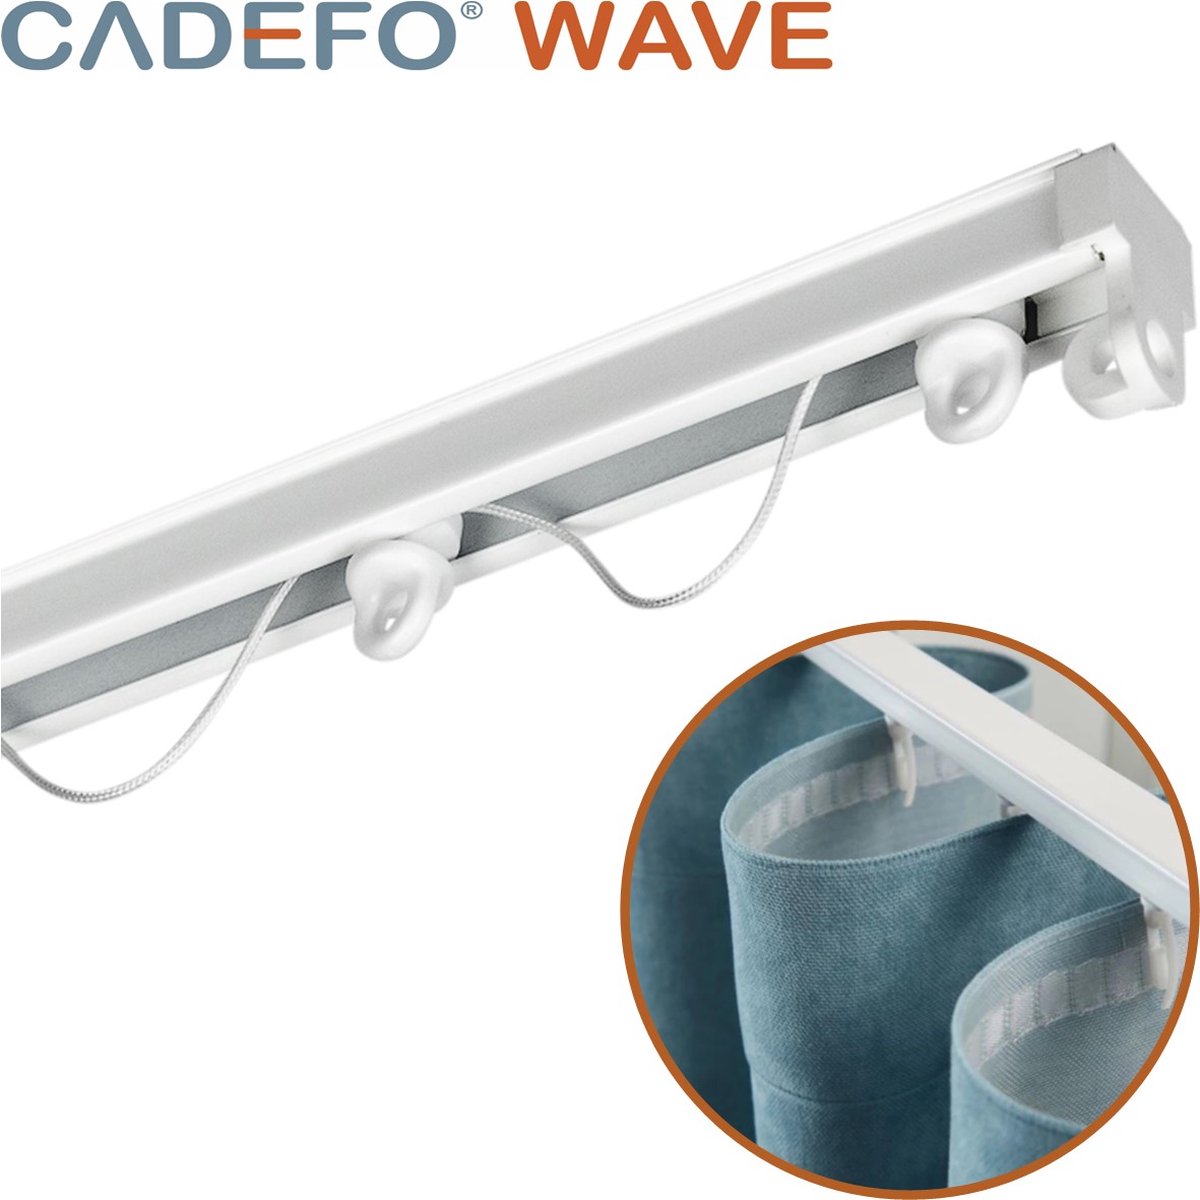 CADEFO WAVE (501 - 550 cm) Gordijnrails - Compleet op maat! - UIT 1 STUK - Leverbaar tot 6 meter - Plafondbevestiging - Lengte 517 cm